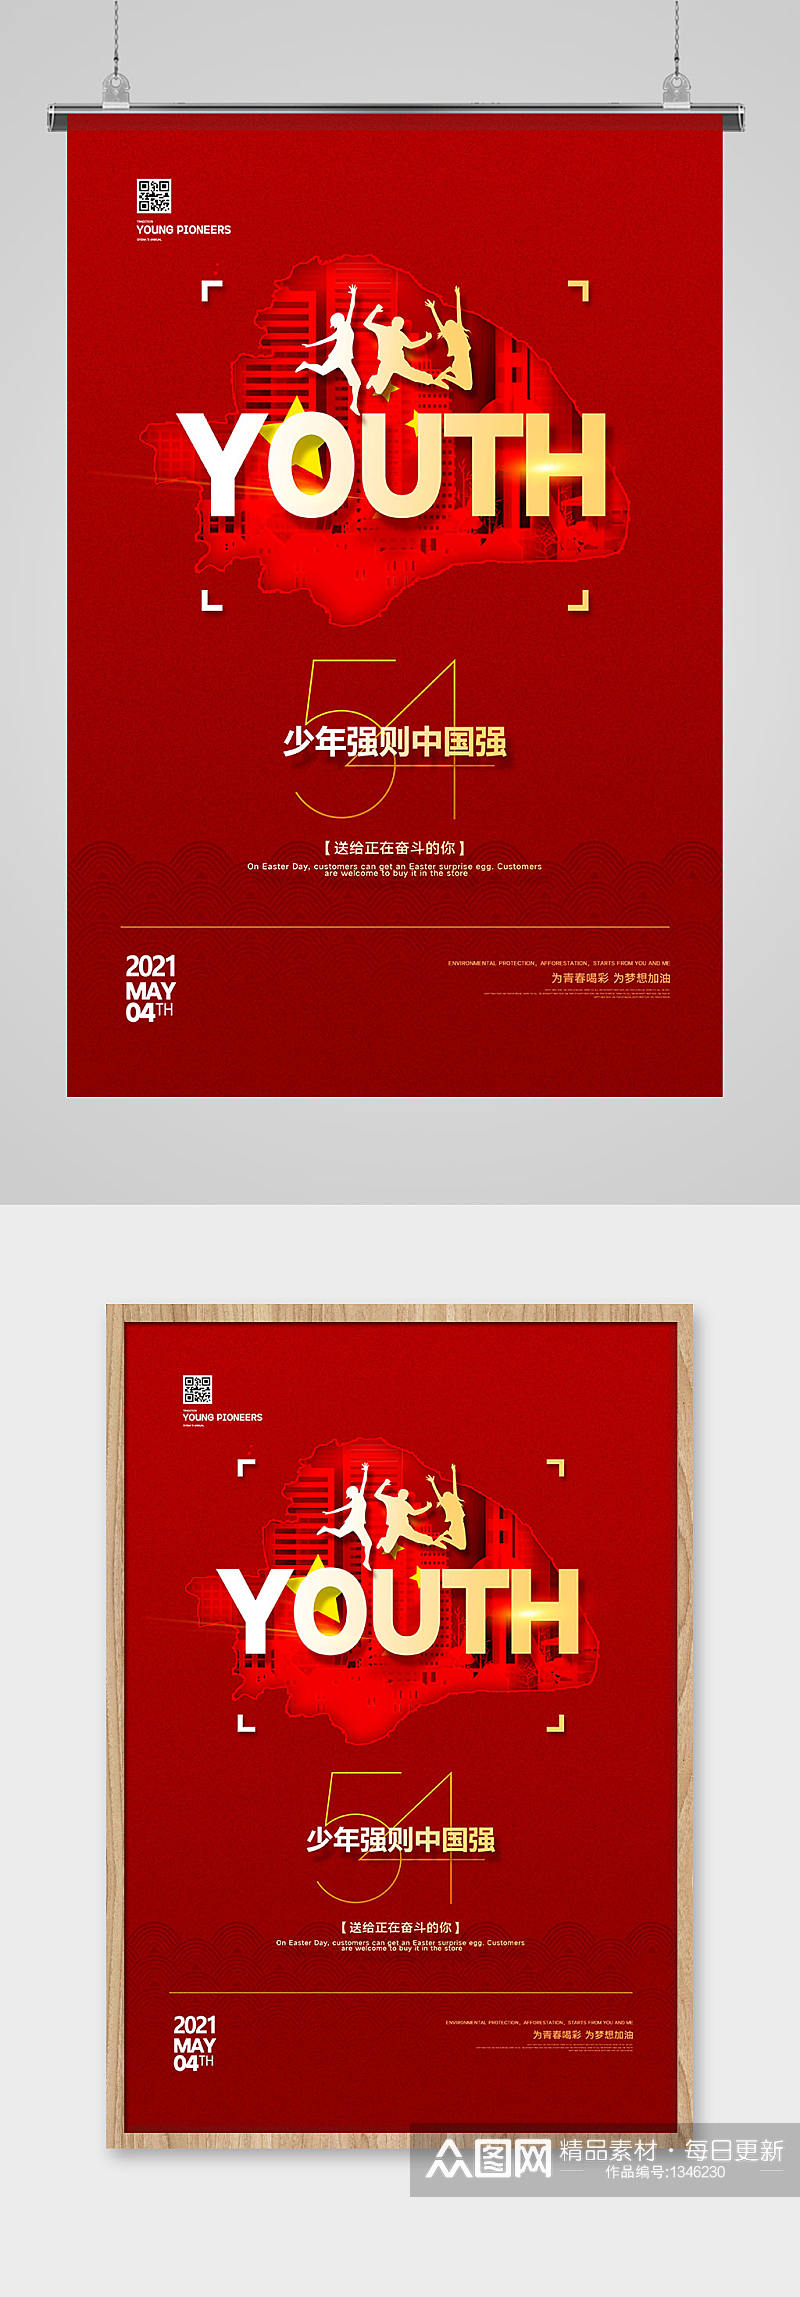 红色党建五四青年节宣传海报设计素材